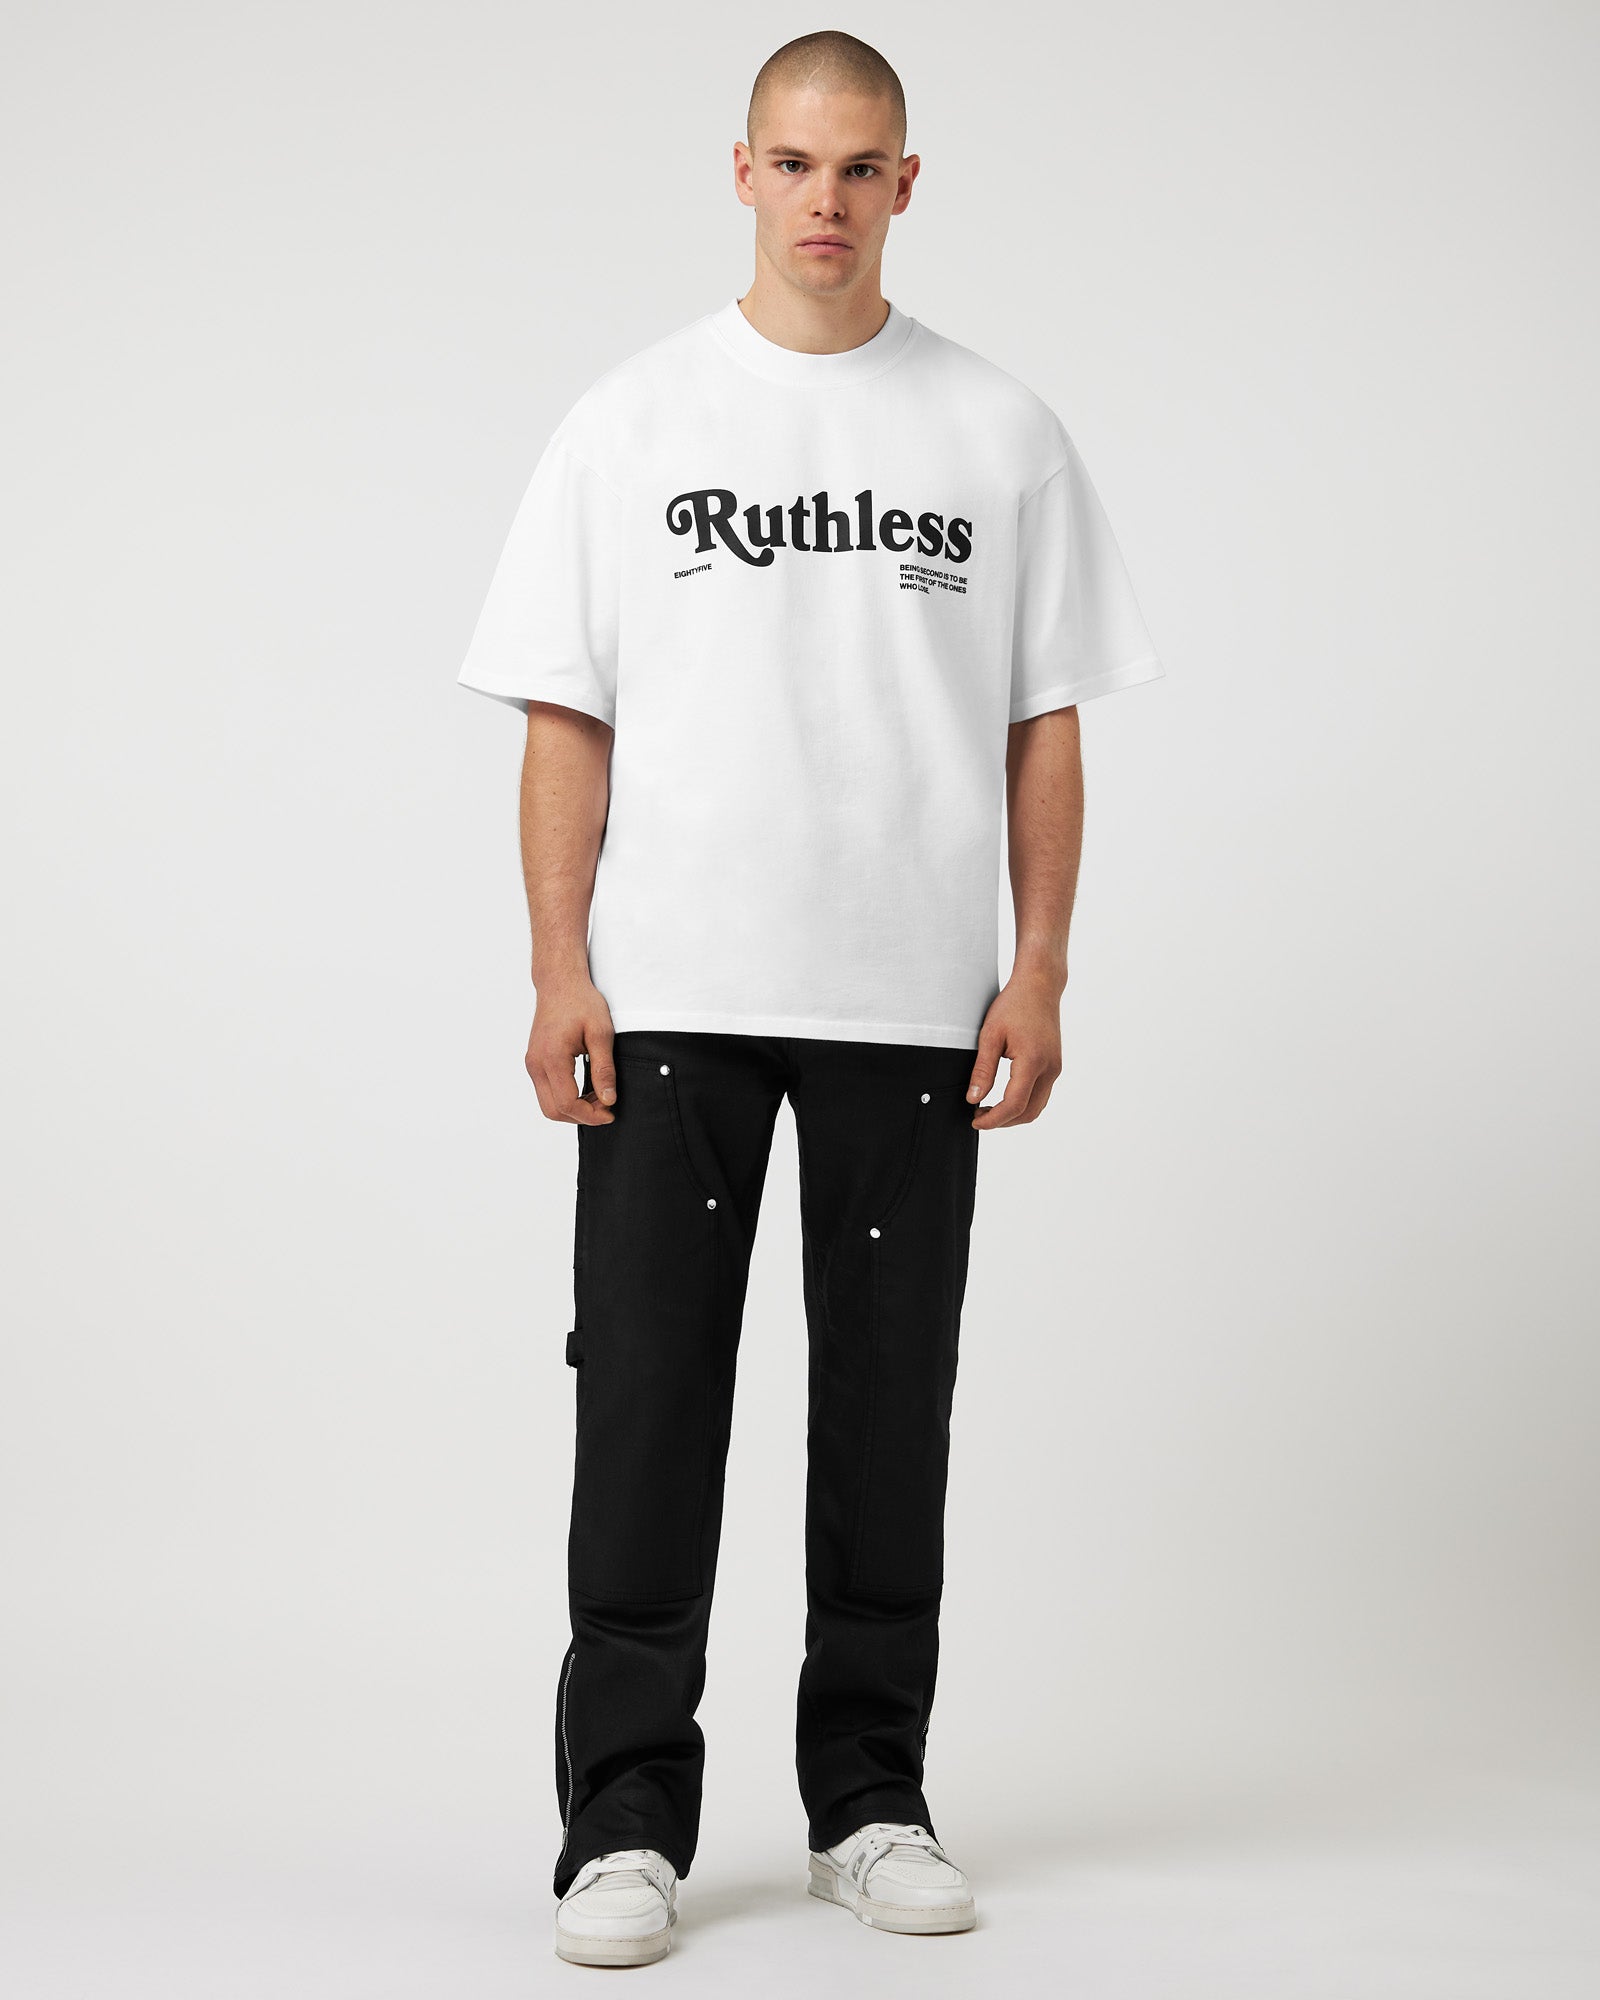 Ruthless T-Shirt